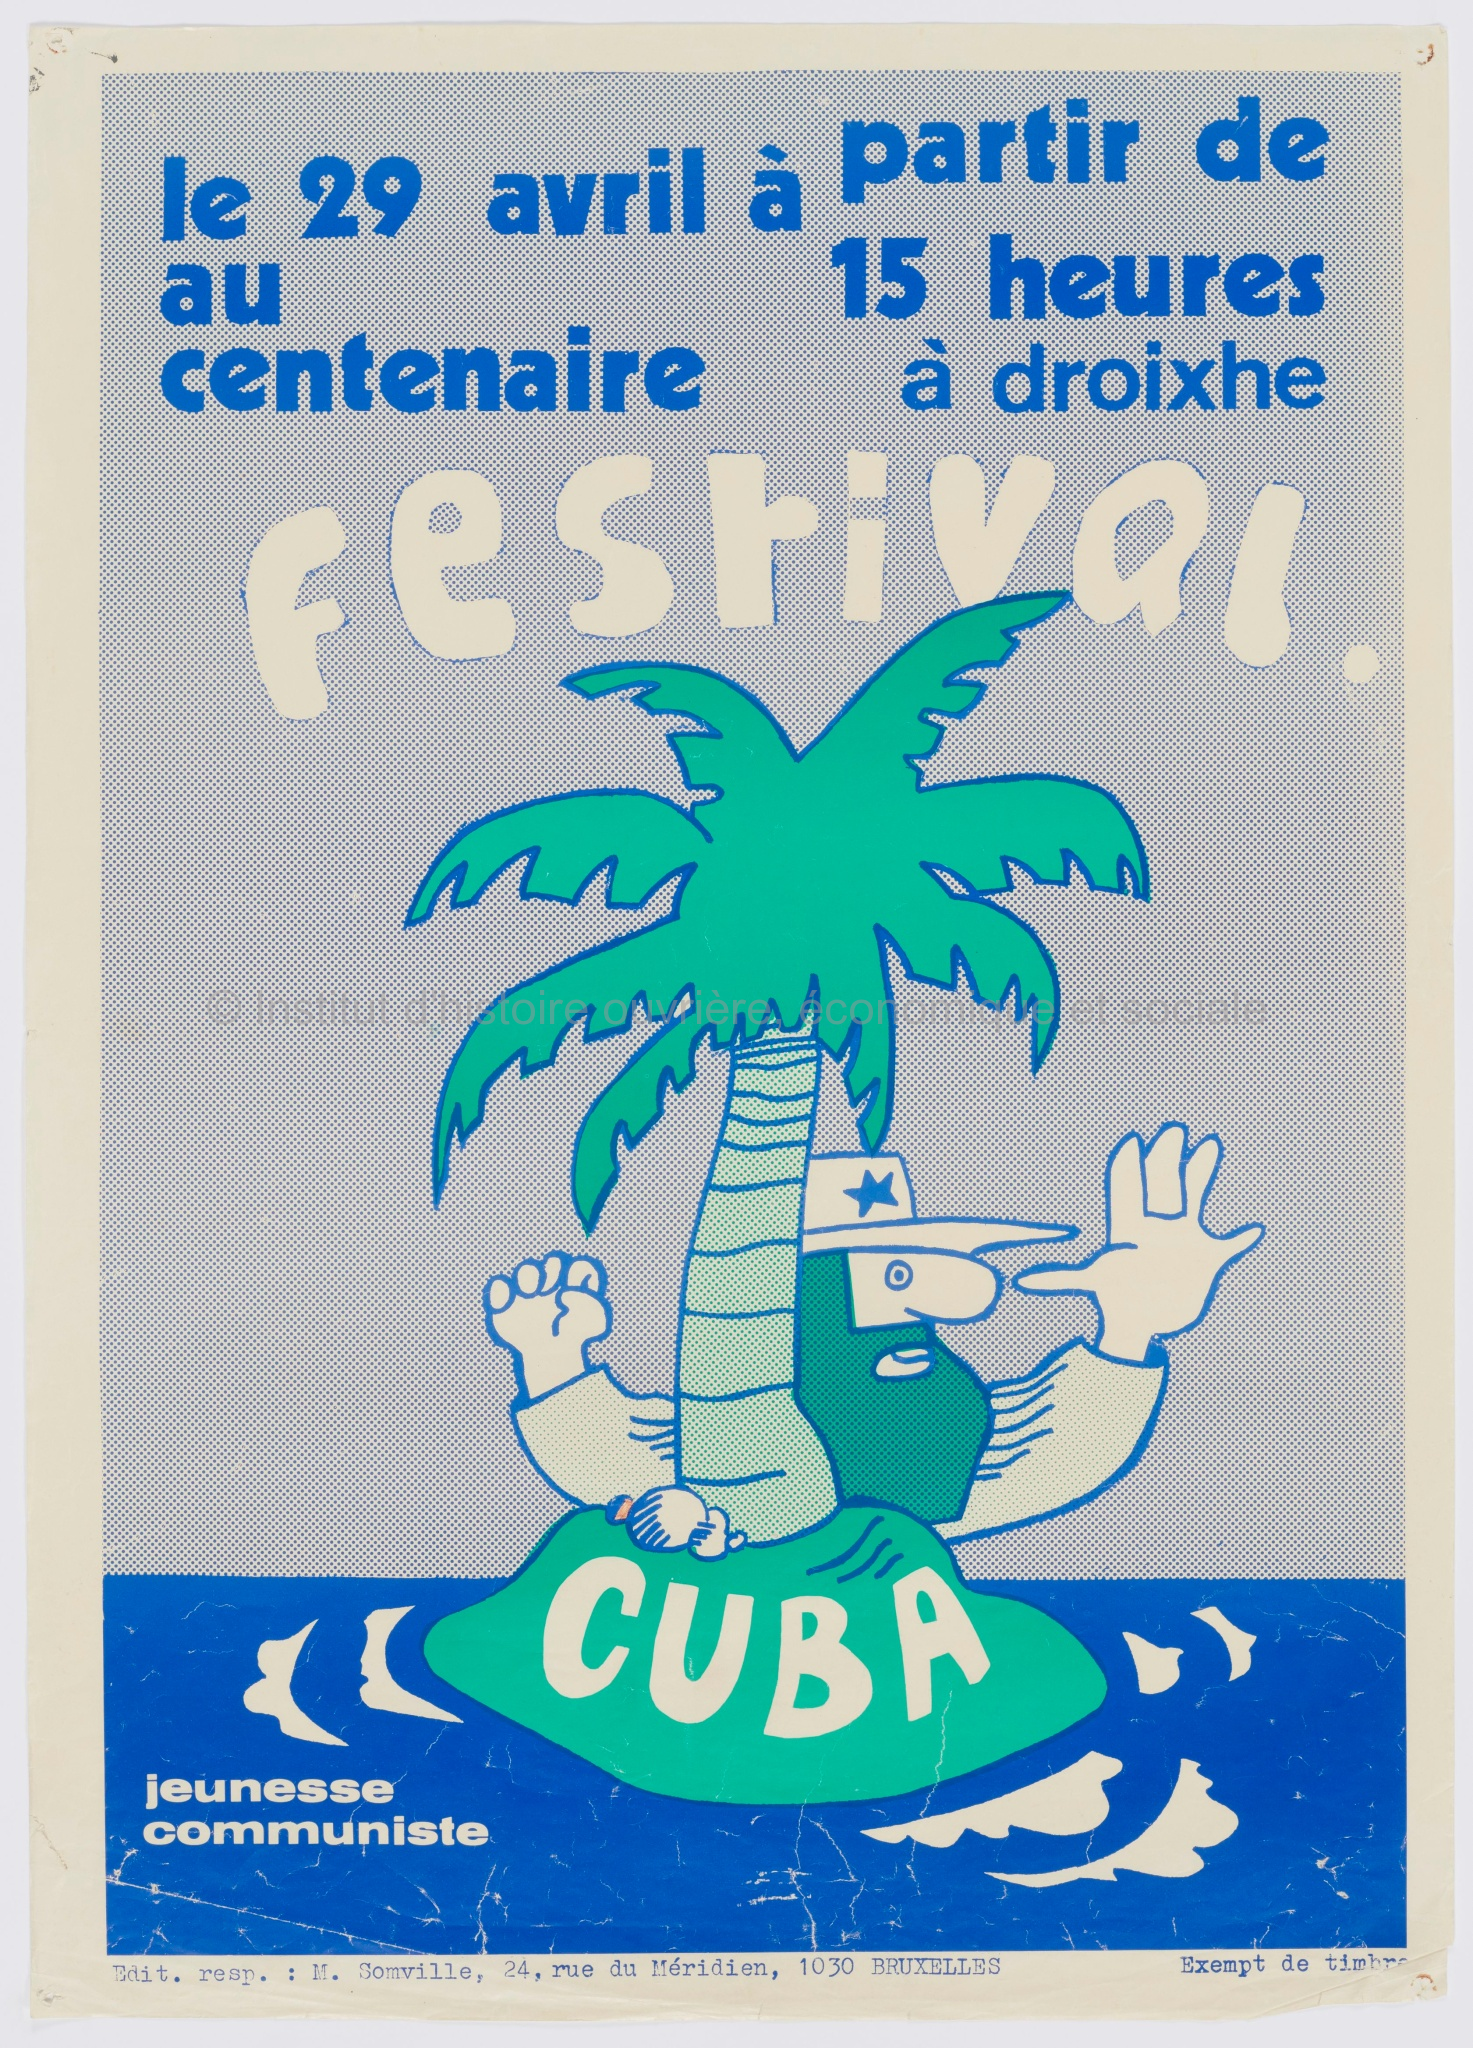 Le 29 avril à partir de 15 heures au Centenaire à Droixhe : Festival Cuba